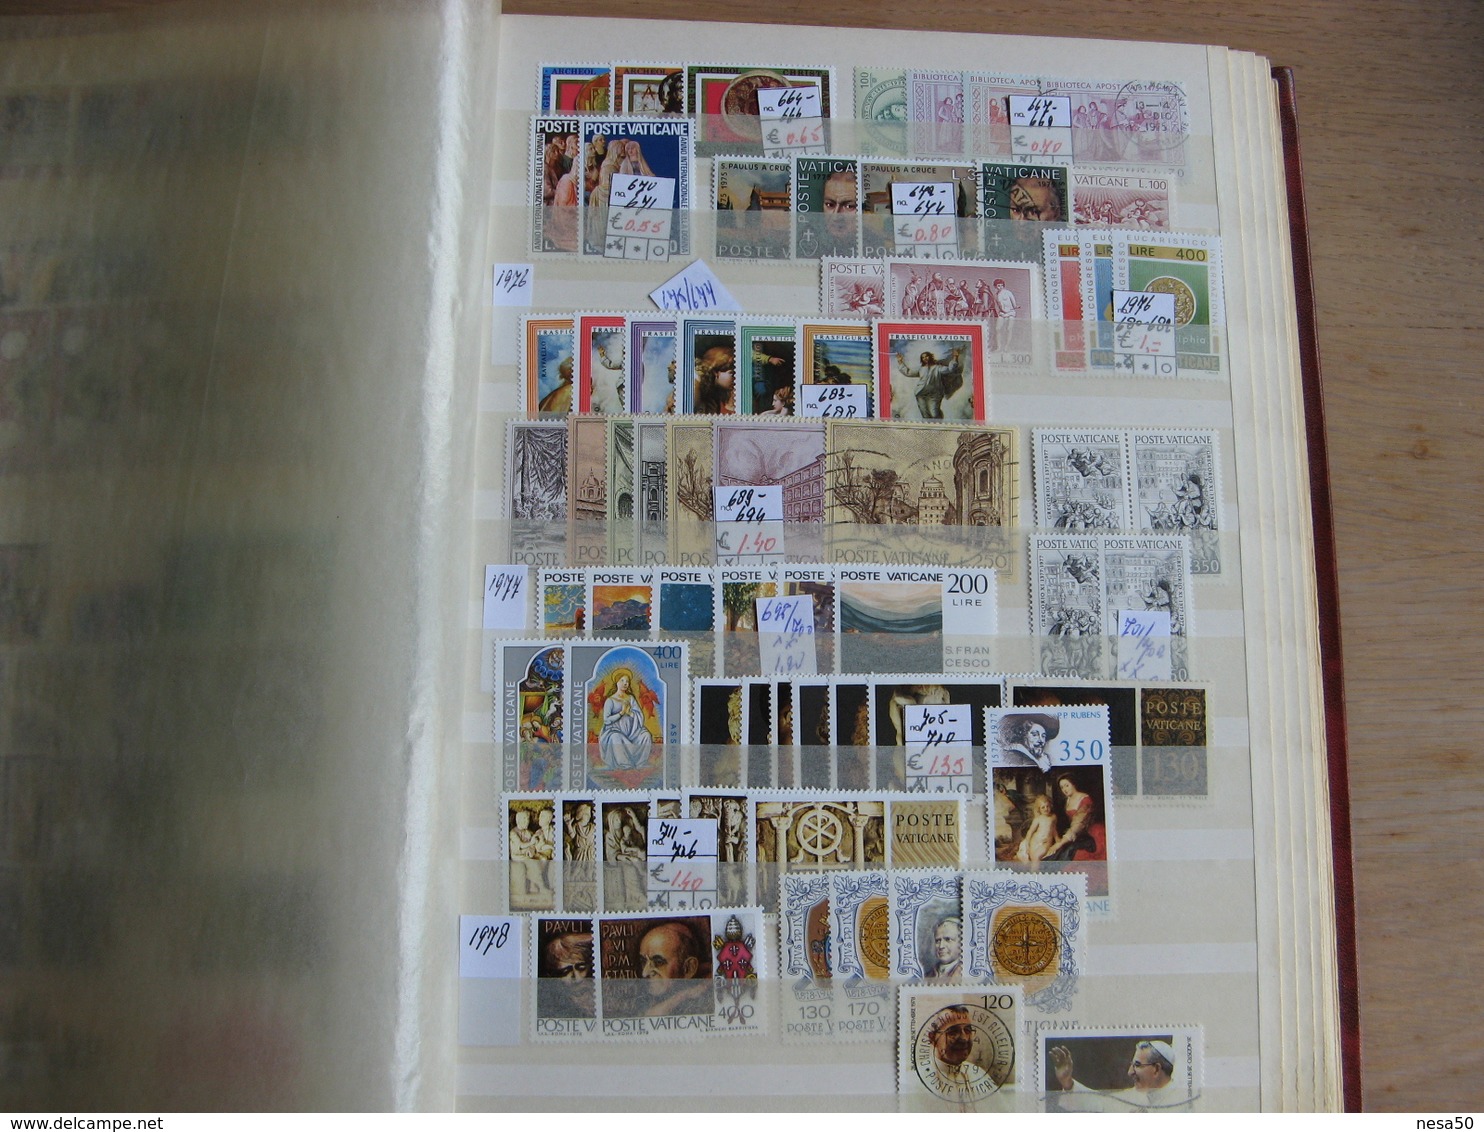 Vaticaan album 1929 - 2013 gestempeld , pagina's met zegels zijn afgebeeld